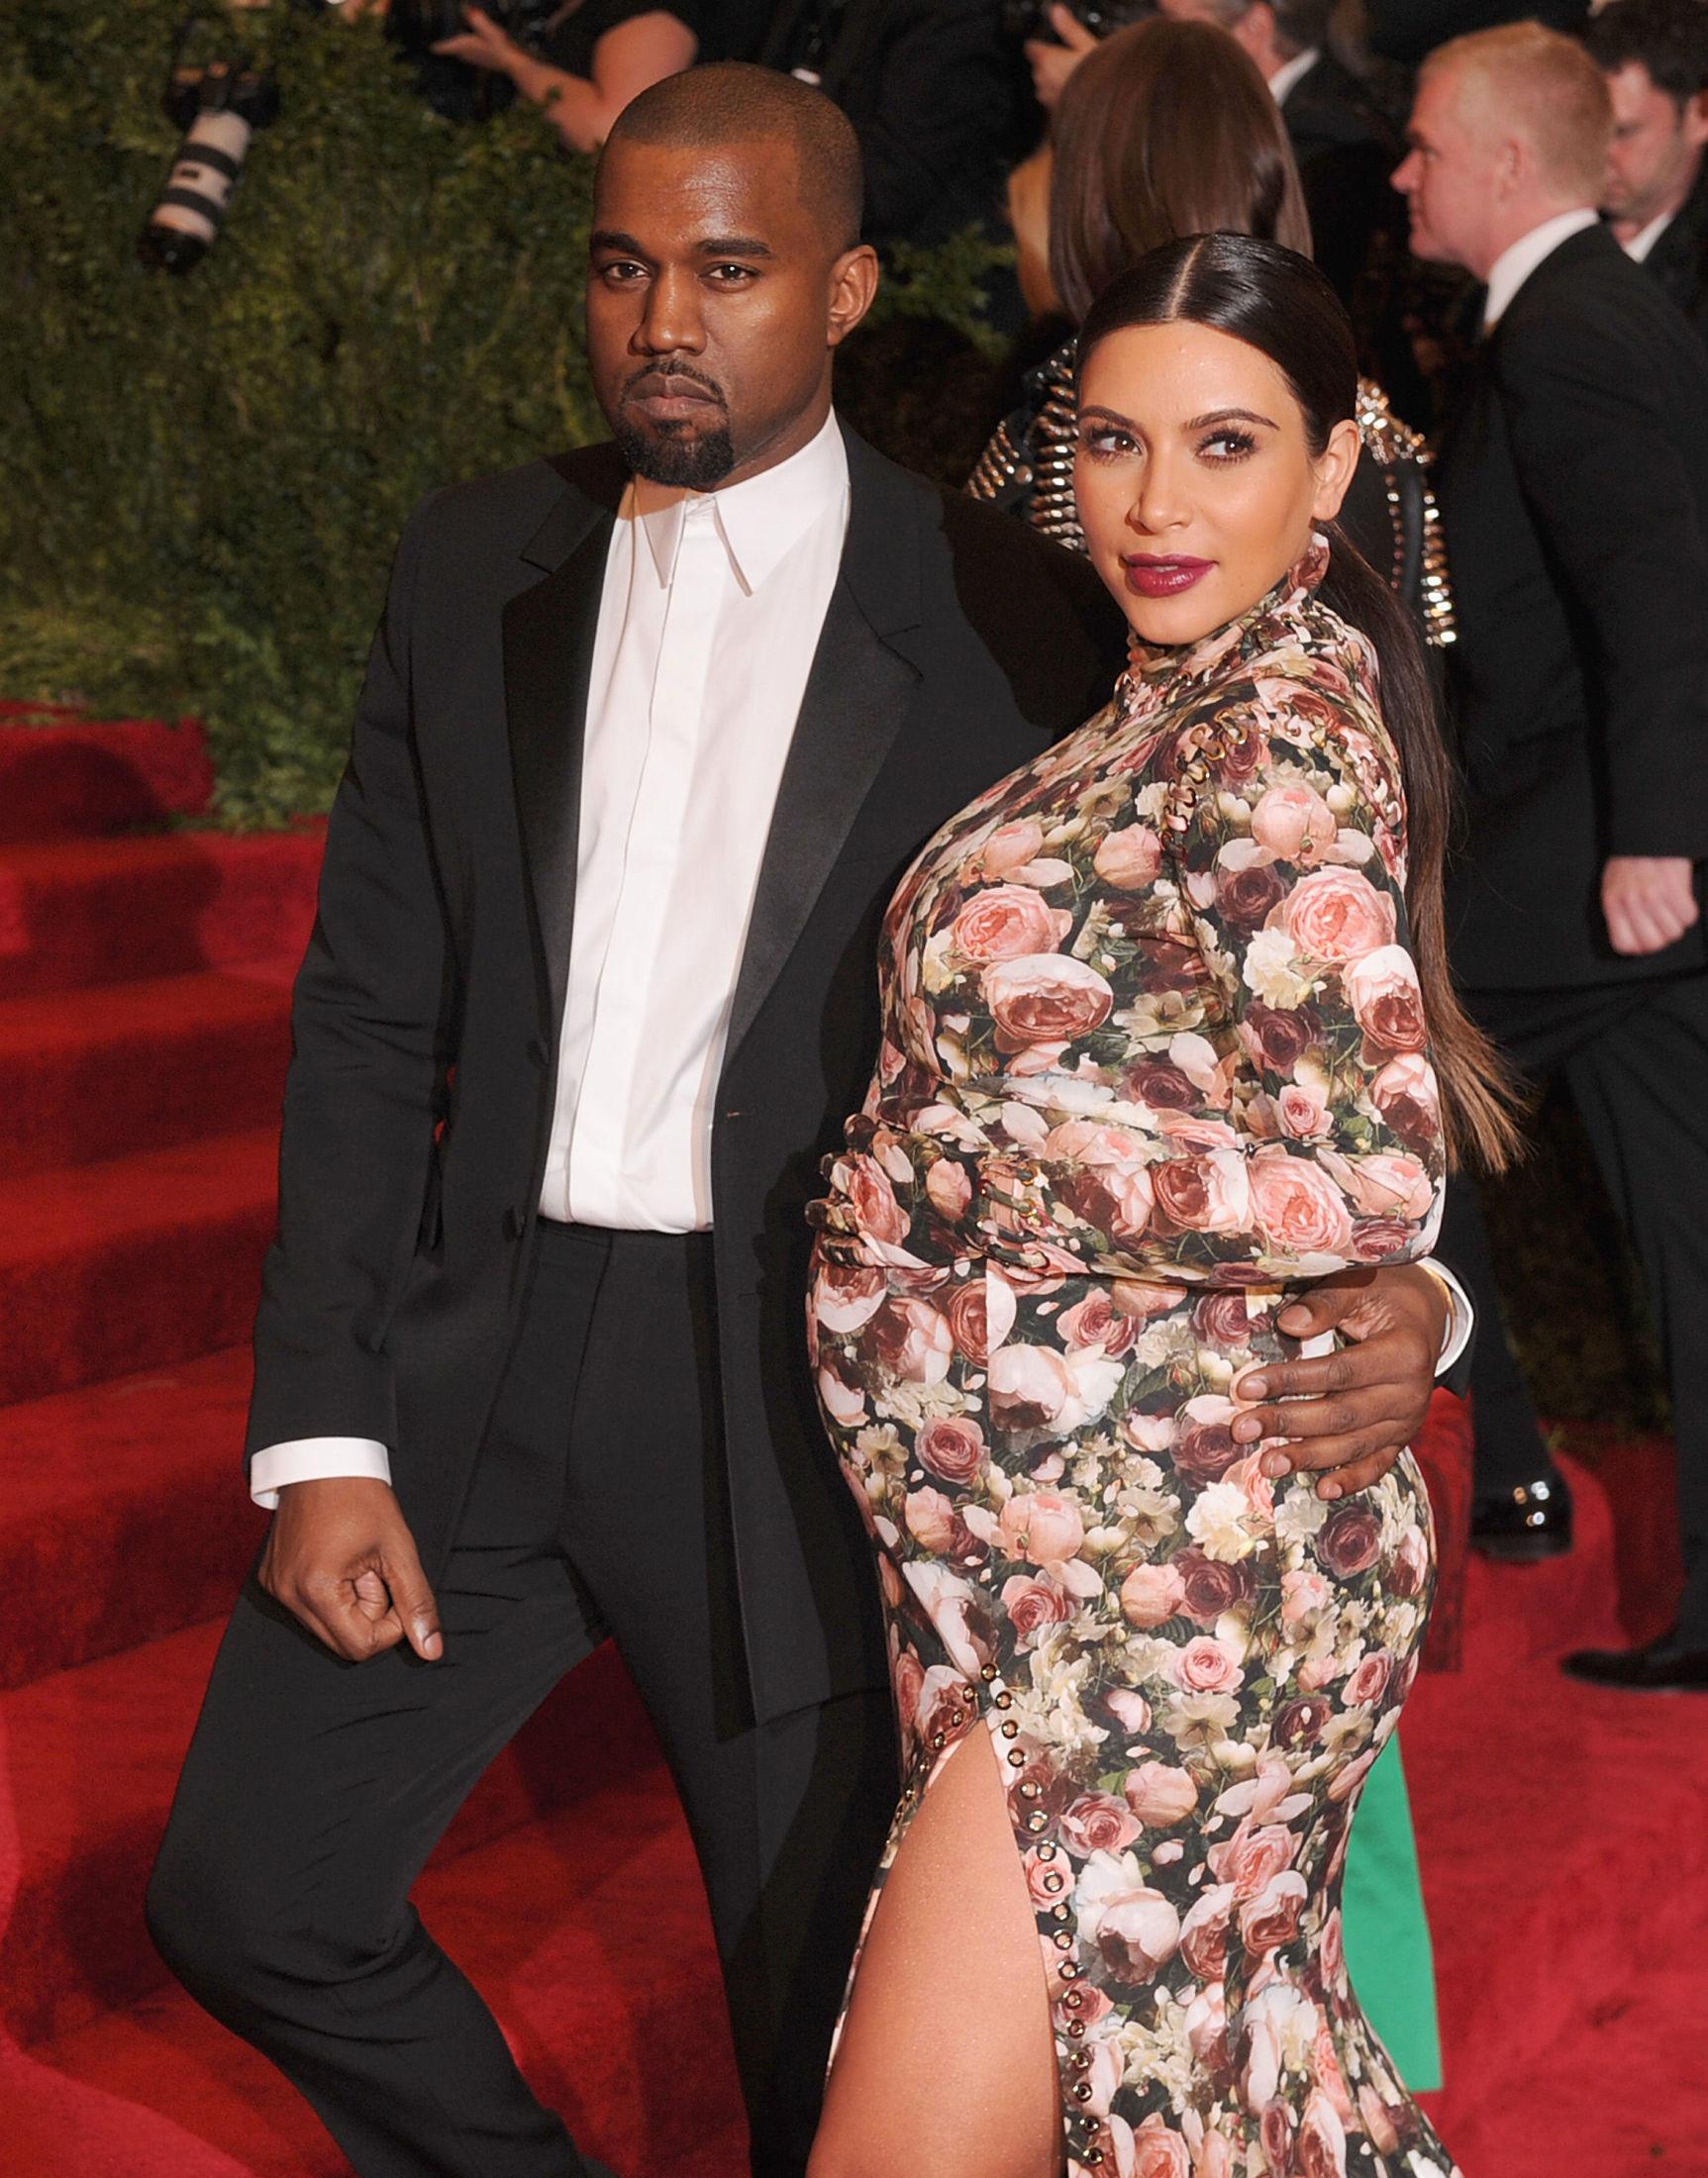 IKONISK ANTREKK: Kim Kardashian og Kanye West under Met-gallaen i 2013. Kardashian var gravid med deres første barn. Foto: Dimitrios Kambouris/Getty Images/AFP.